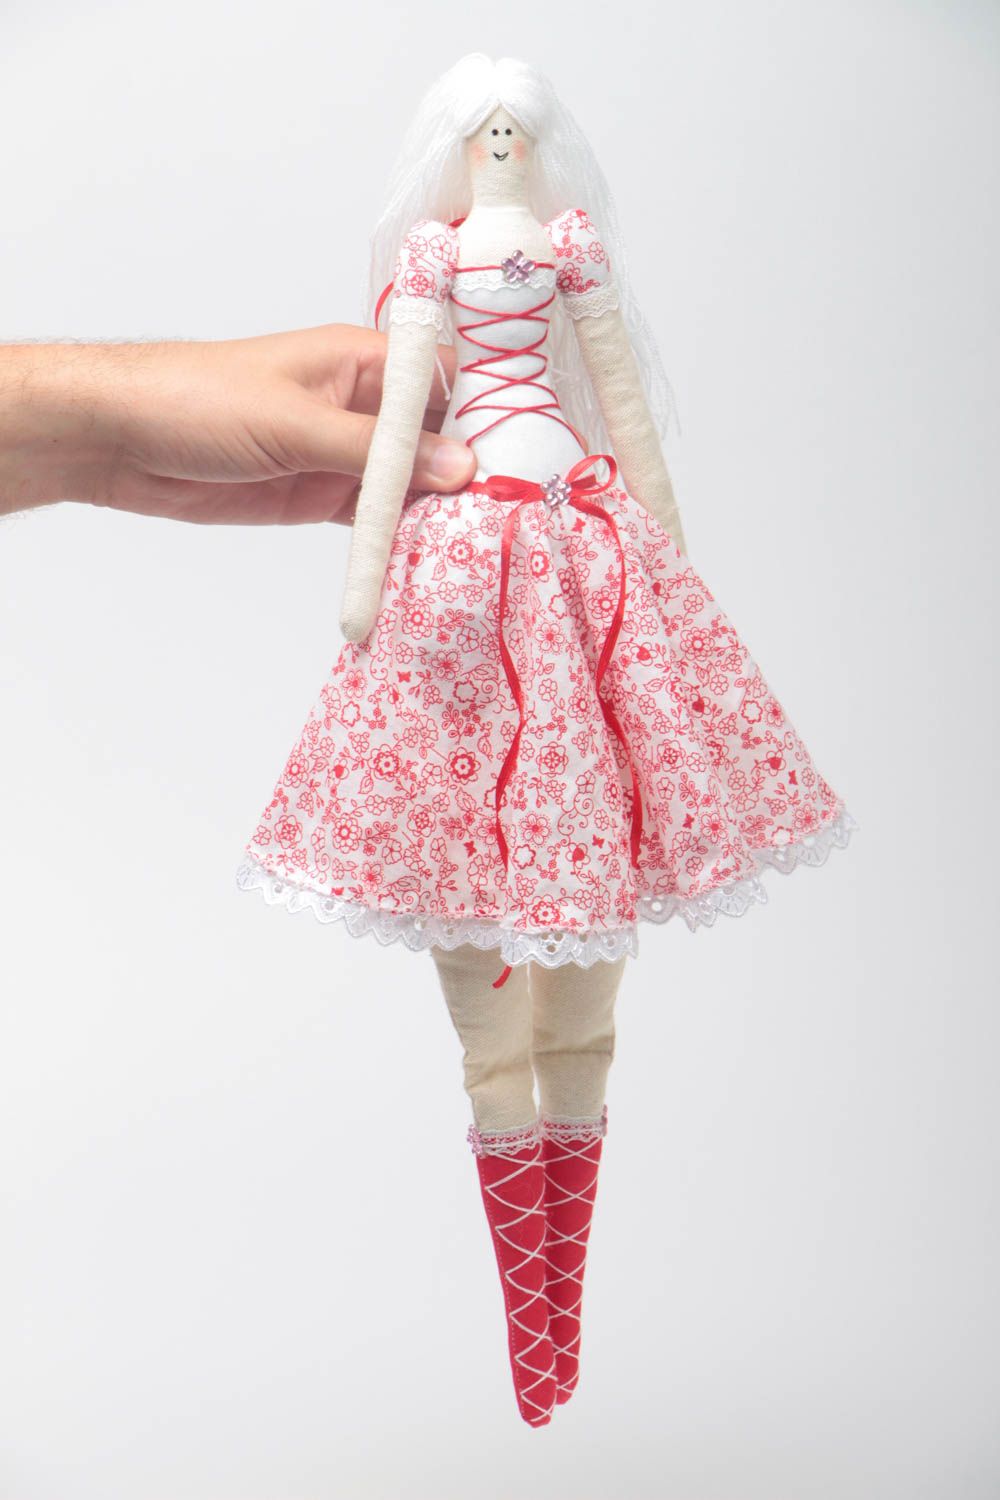 Яркая мягкая кукла ручной работы оригинальная авторская для декора интерьера  фото 5